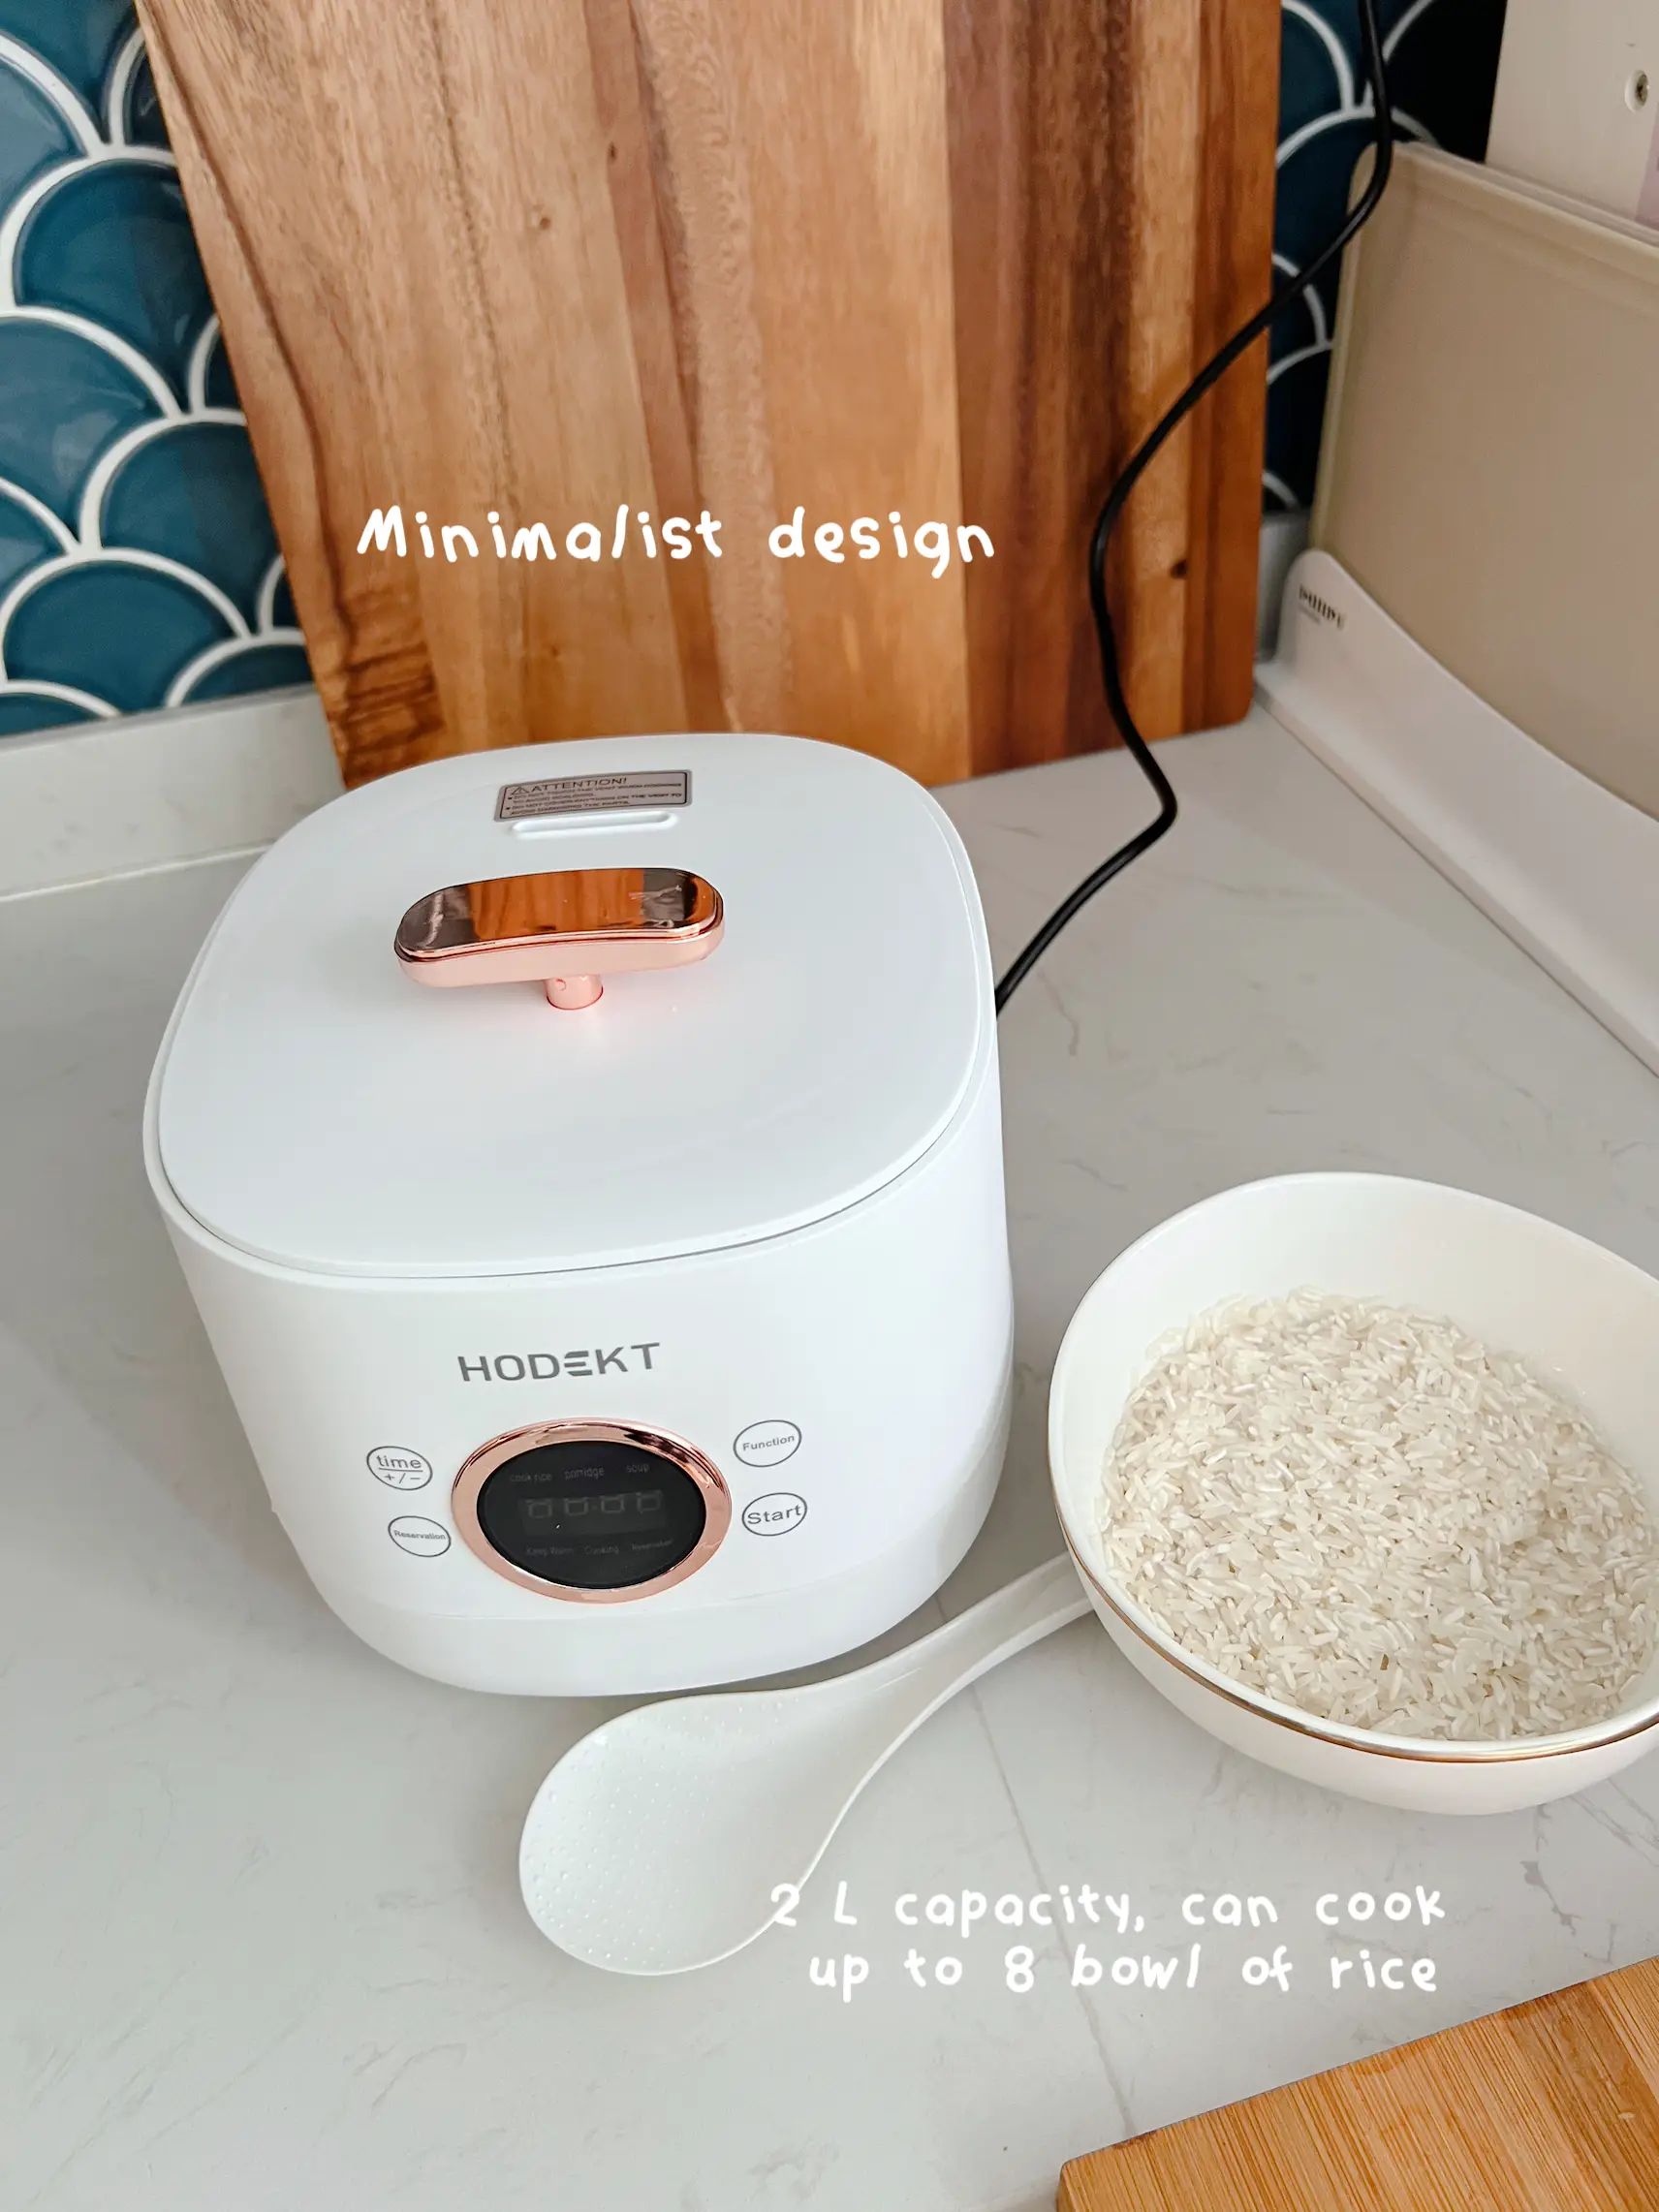 Soseki Rice Cooker Cantik Putih Bisa di atas meja 1,2 Liter 2 Cup